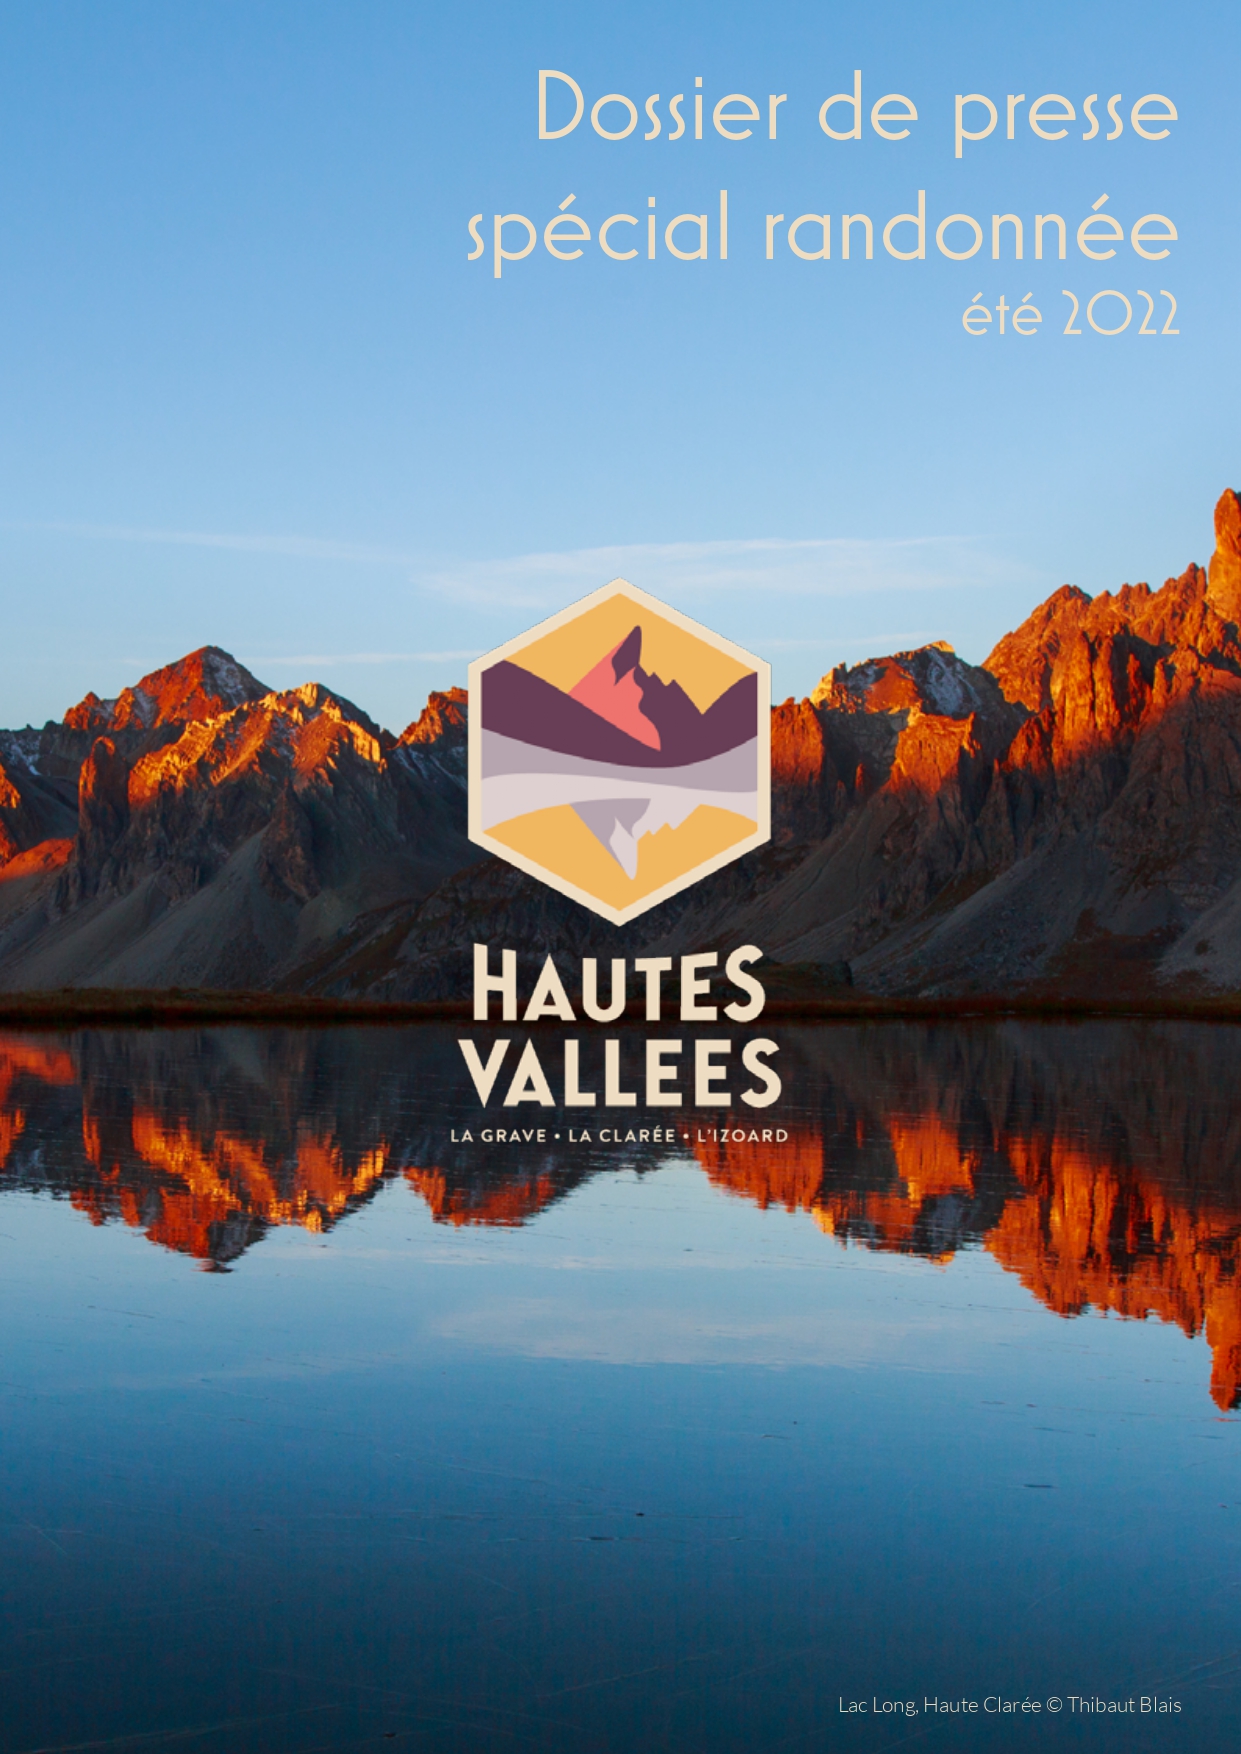 dossier de presse spécial rando Hautes Vallées